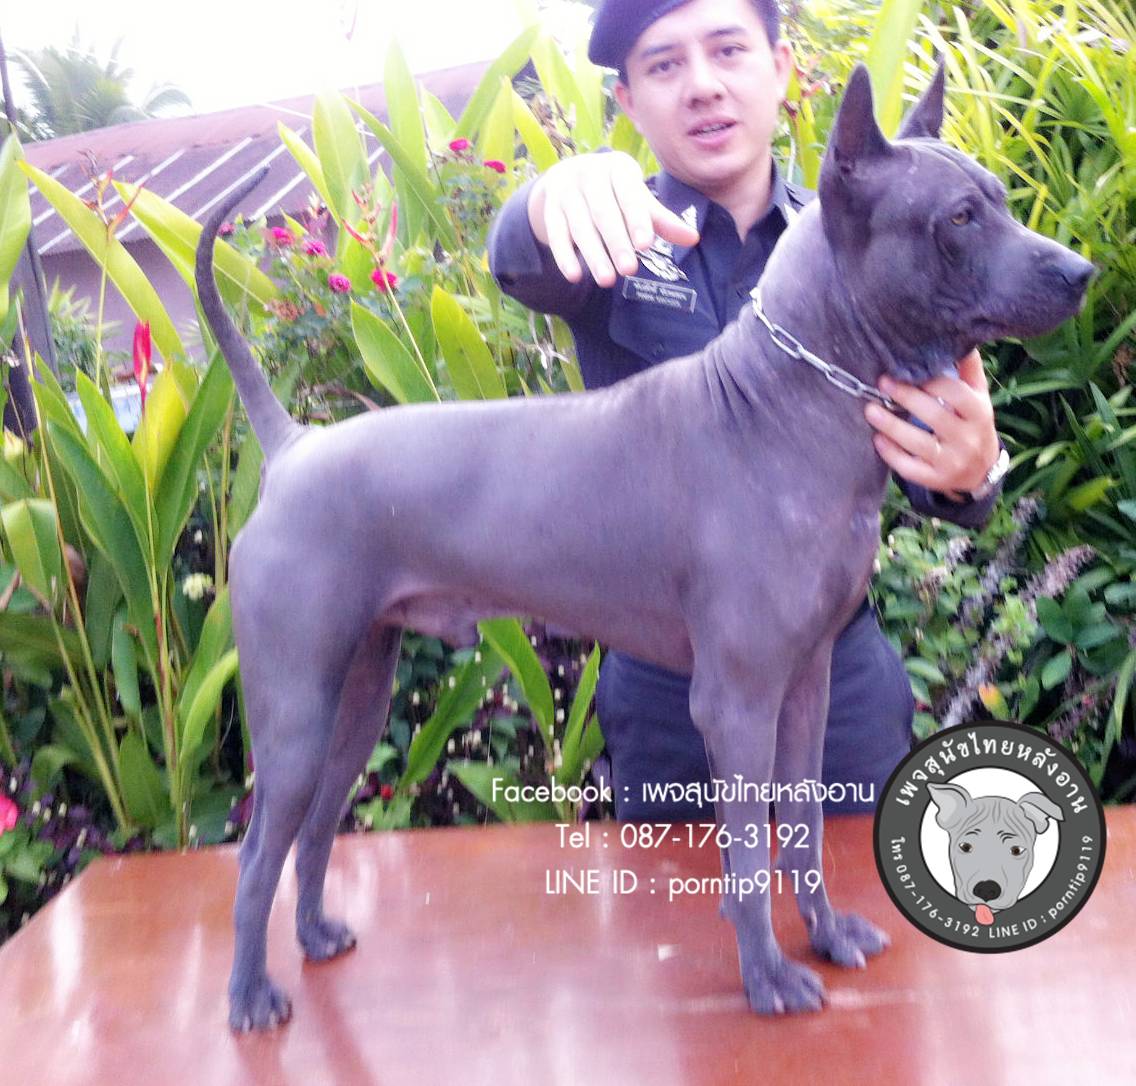 สุนัขไทยหลังอาน ขายสุนัขไทยหลังอาน   ลูกสุนัขไทยหลังอาน พ่อพันธุ์แม่พันธุ์IMG_4794_webcamera360_20150123164750